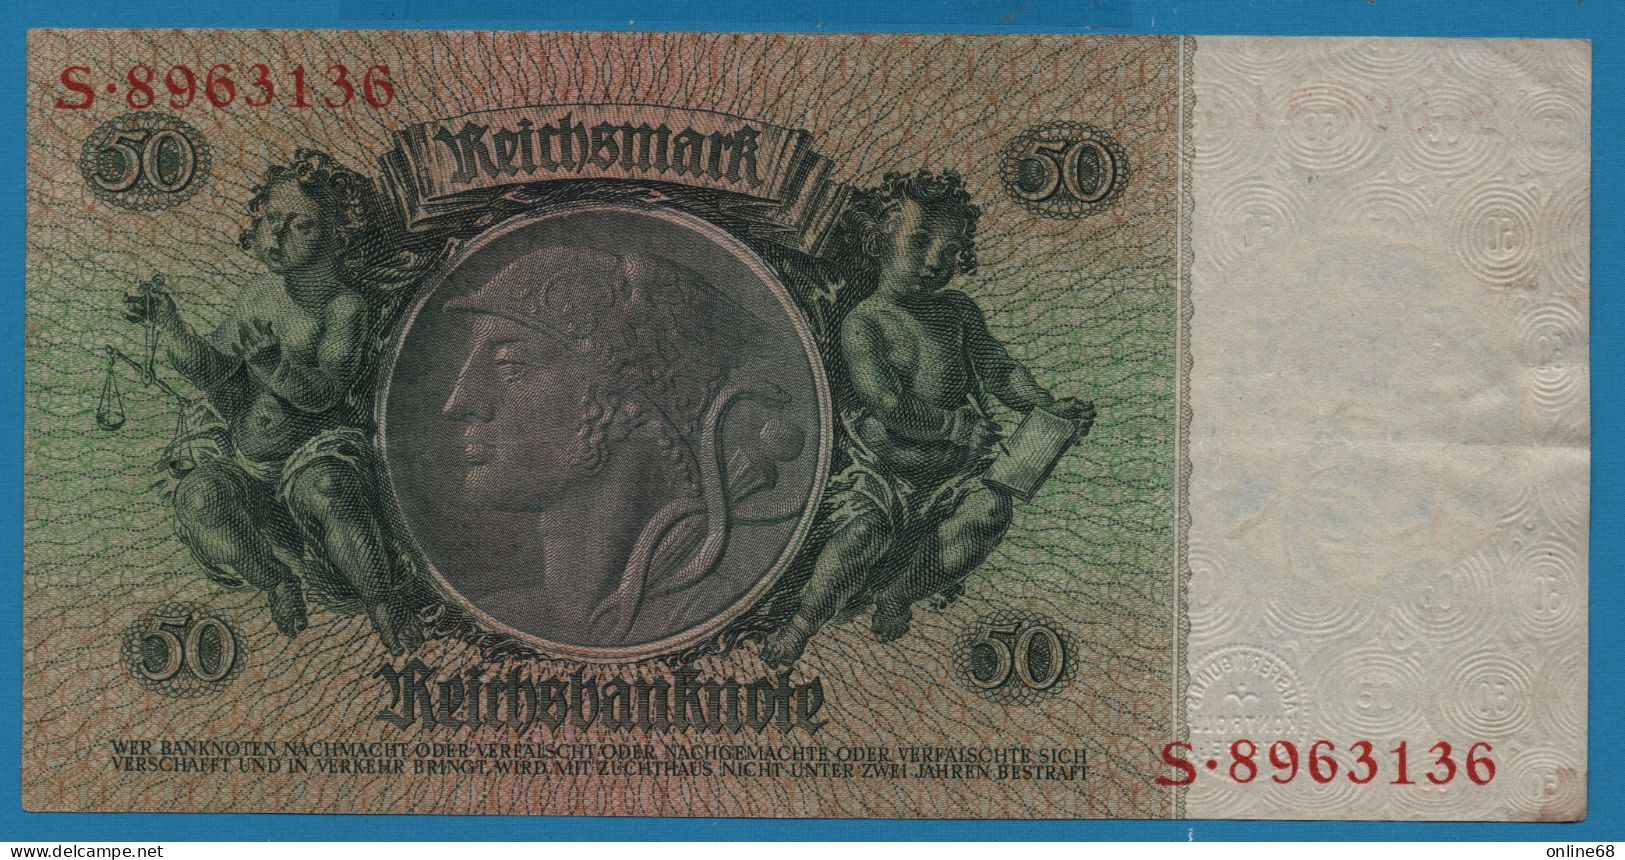 DEUTSCHES REICH 50 REICHSMARK 30.03.1933 LETTER D # S.8963136 P# 182a  David Hansemann - 50 Reichsmark